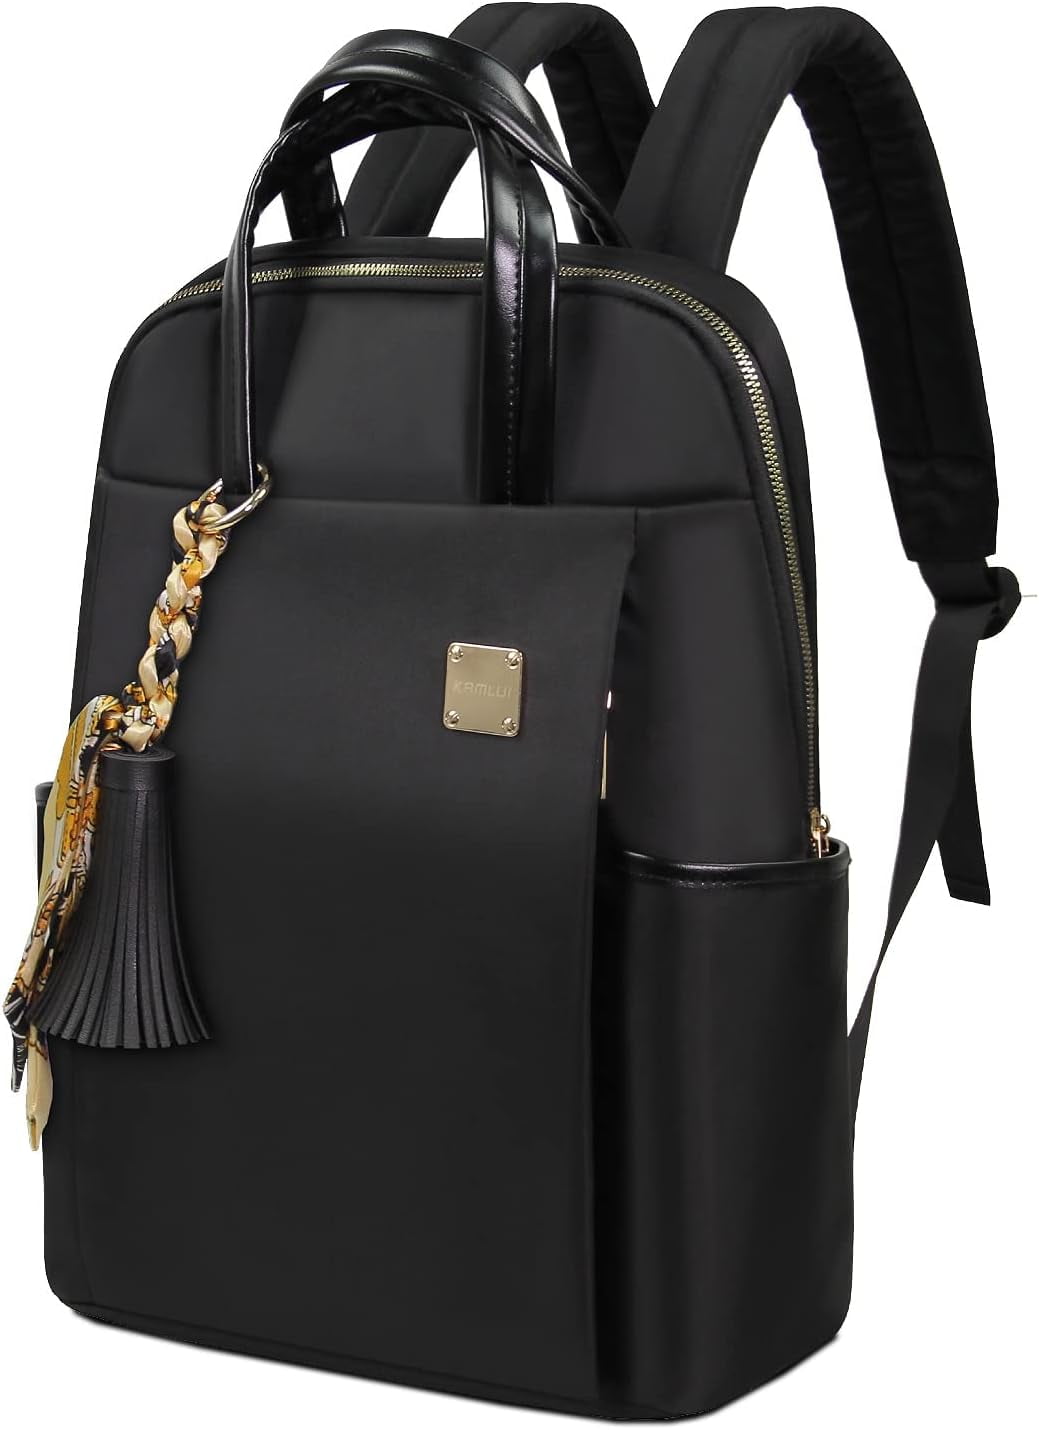 Business leather backpack D2L for women - DEGELER